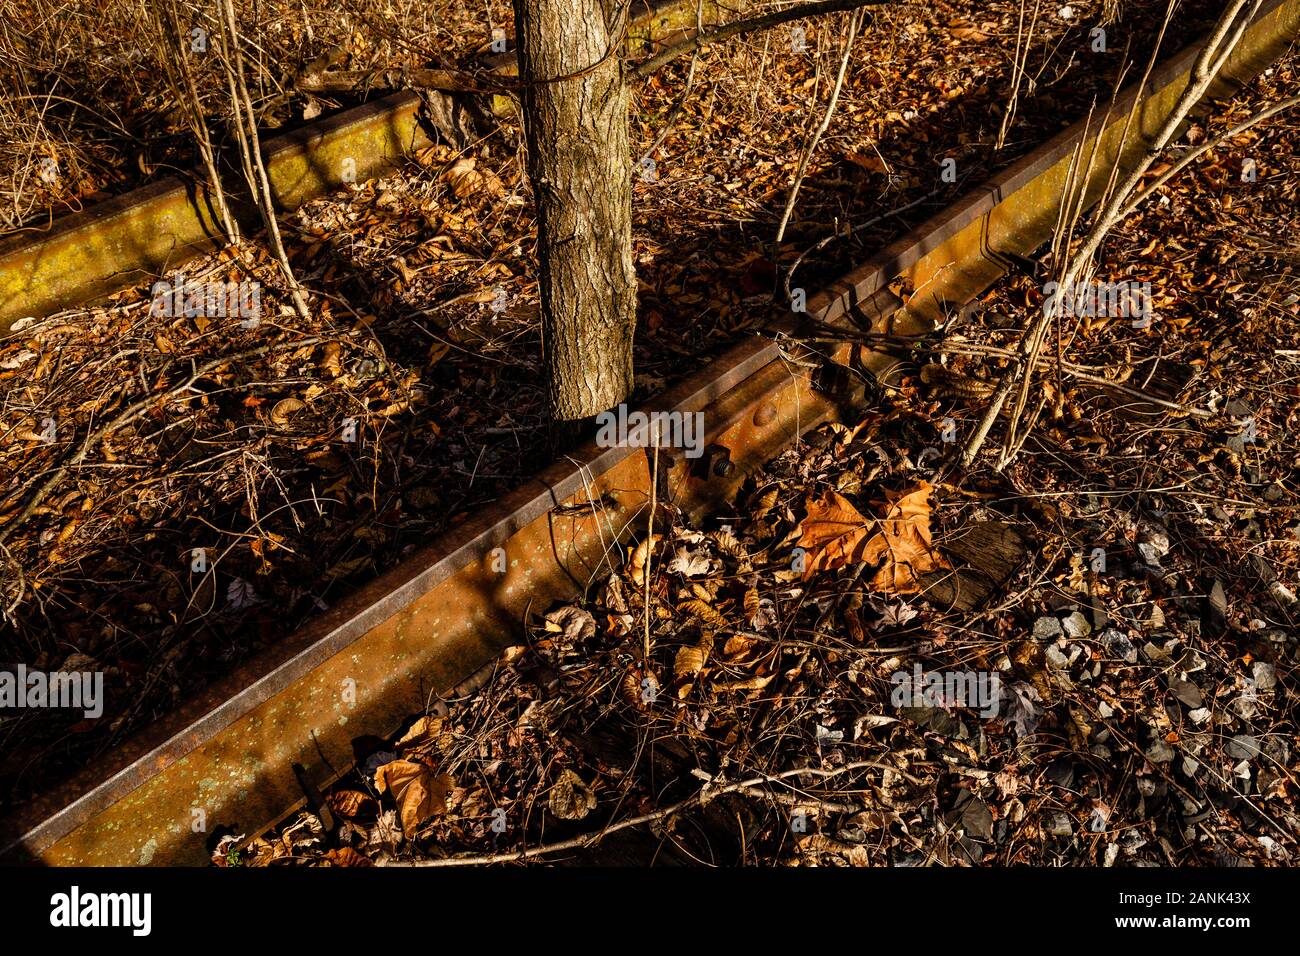 Primo piano di binari ferroviari arrugginiti e abbandonati, ricchi d'oro e di luce marrone, fin dalla mattina presto di un inverno; tra le rotaie cresce un albero. Foto Stock